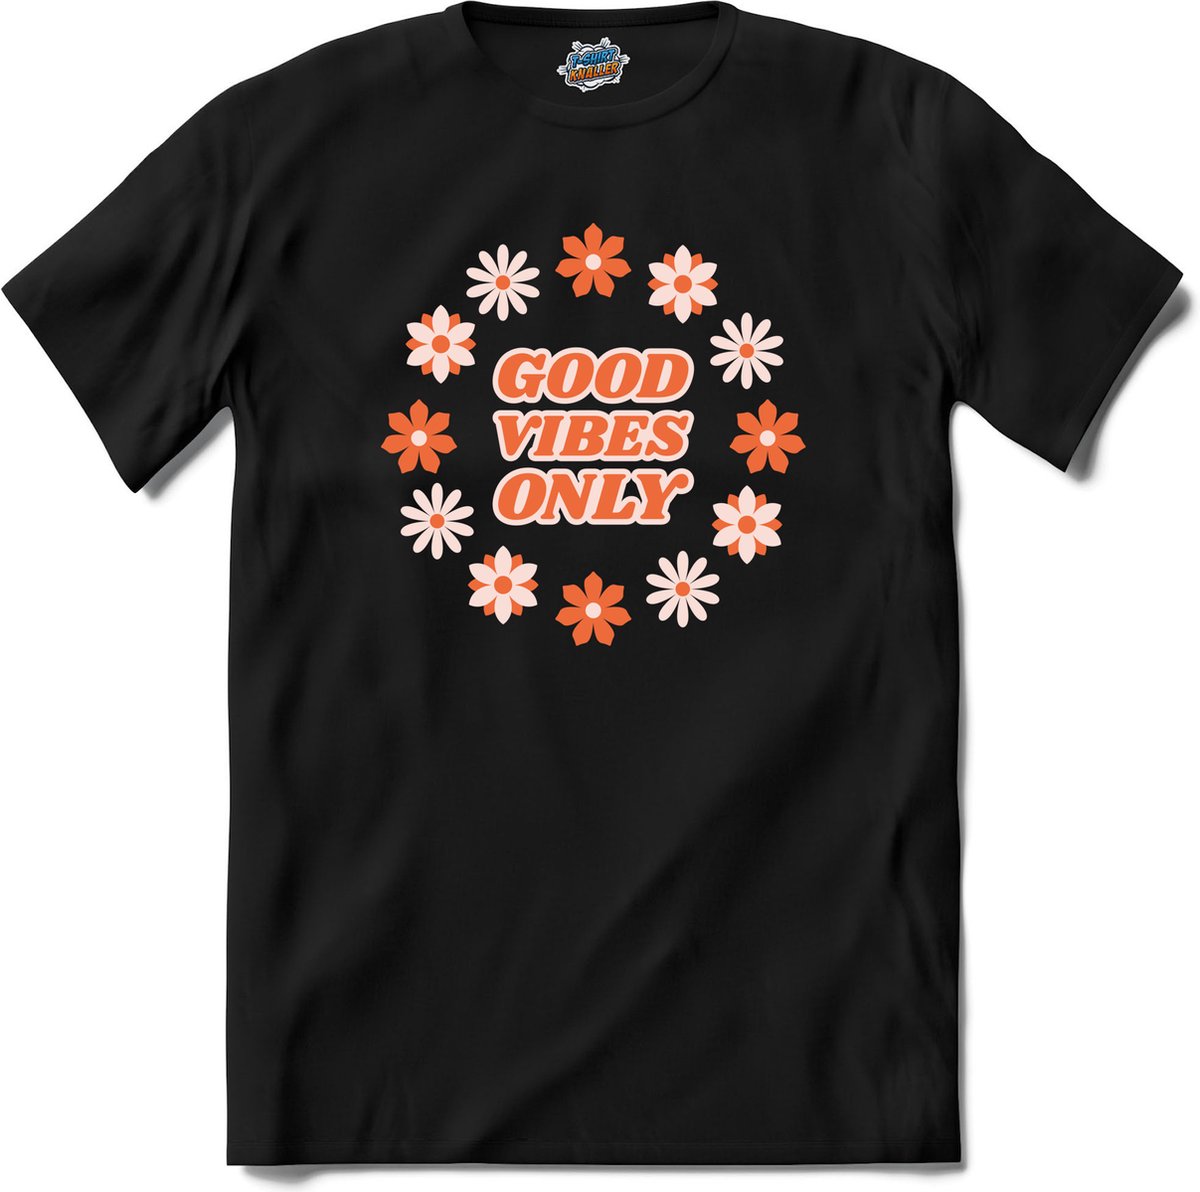 Flower power Good vibes only - T-Shirt - Meisjes - Zwart - Maat 6 jaar